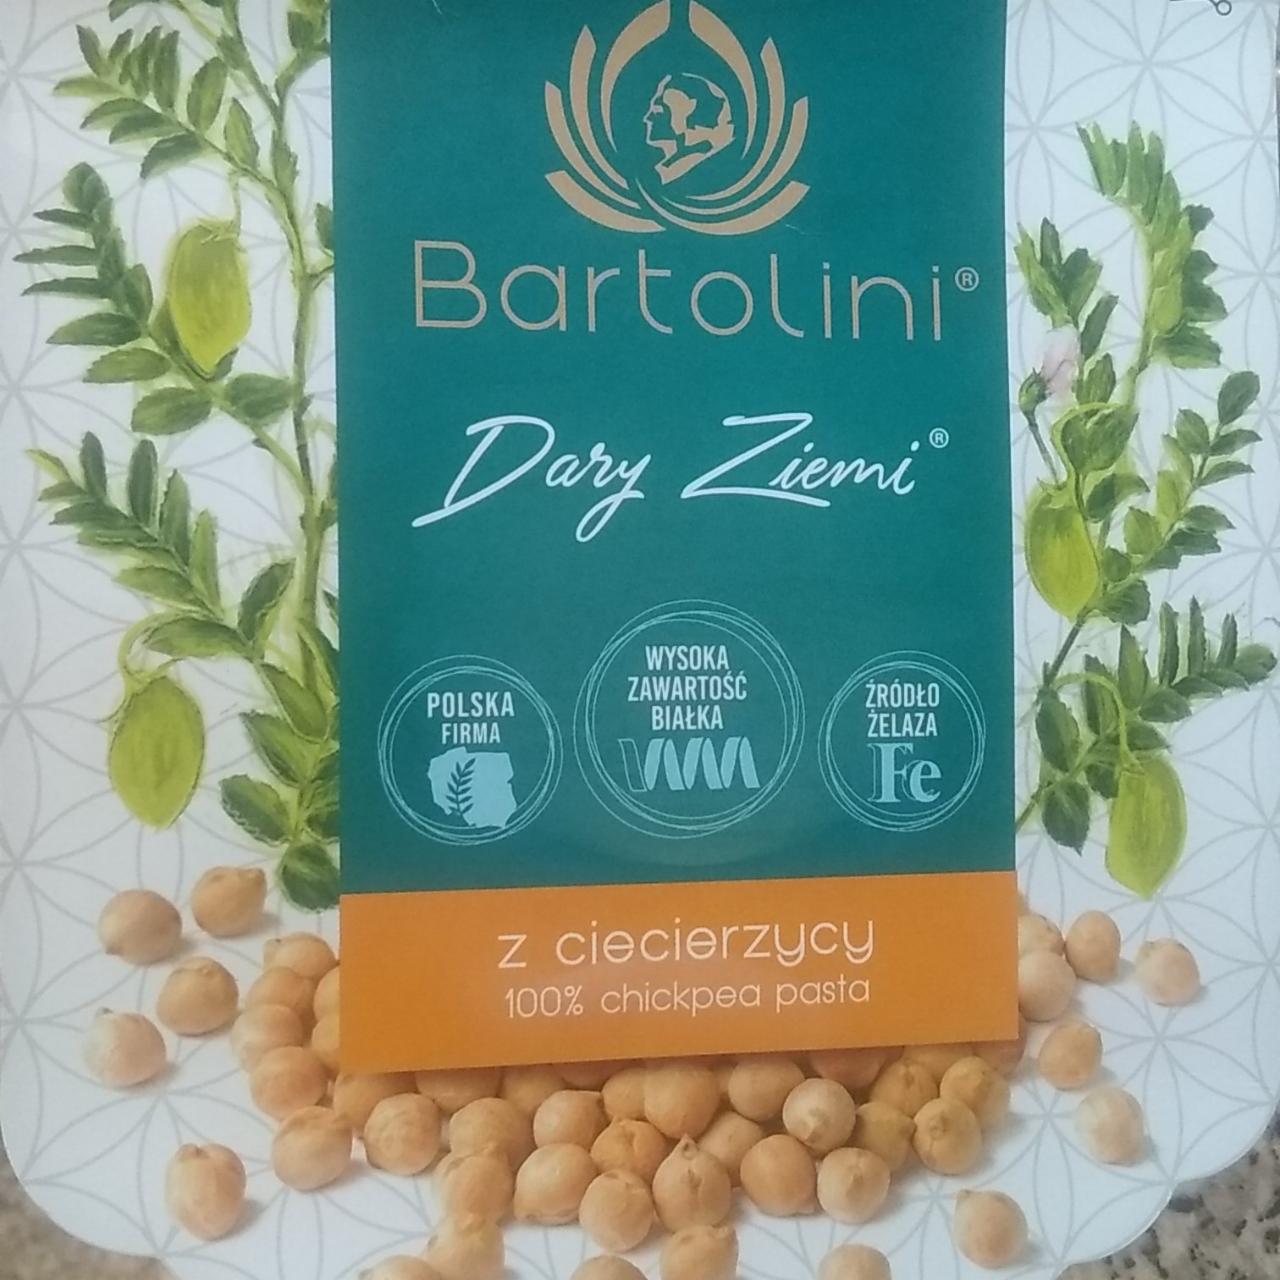 Zdjęcia - Dary Ziemi z ciecierzycy 100% chickpea pasta Bartolini